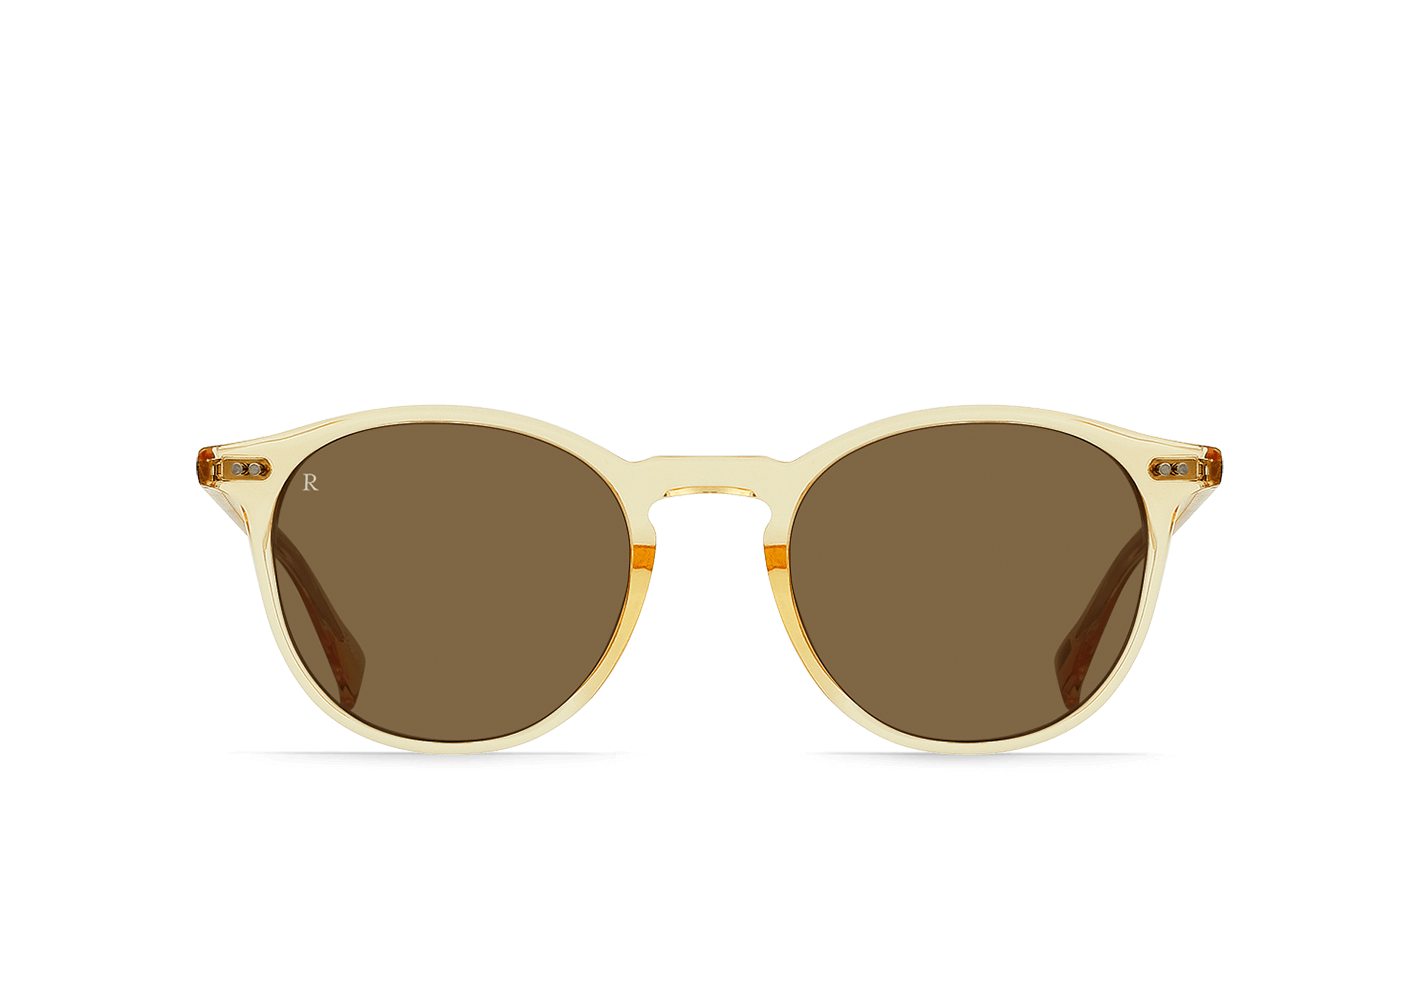 2021 New UV Protection Ladies Sunglasses Fashion Big Frame Square Glasses  Lunette De Soleil Femme Marque De Luxe - AliExpress